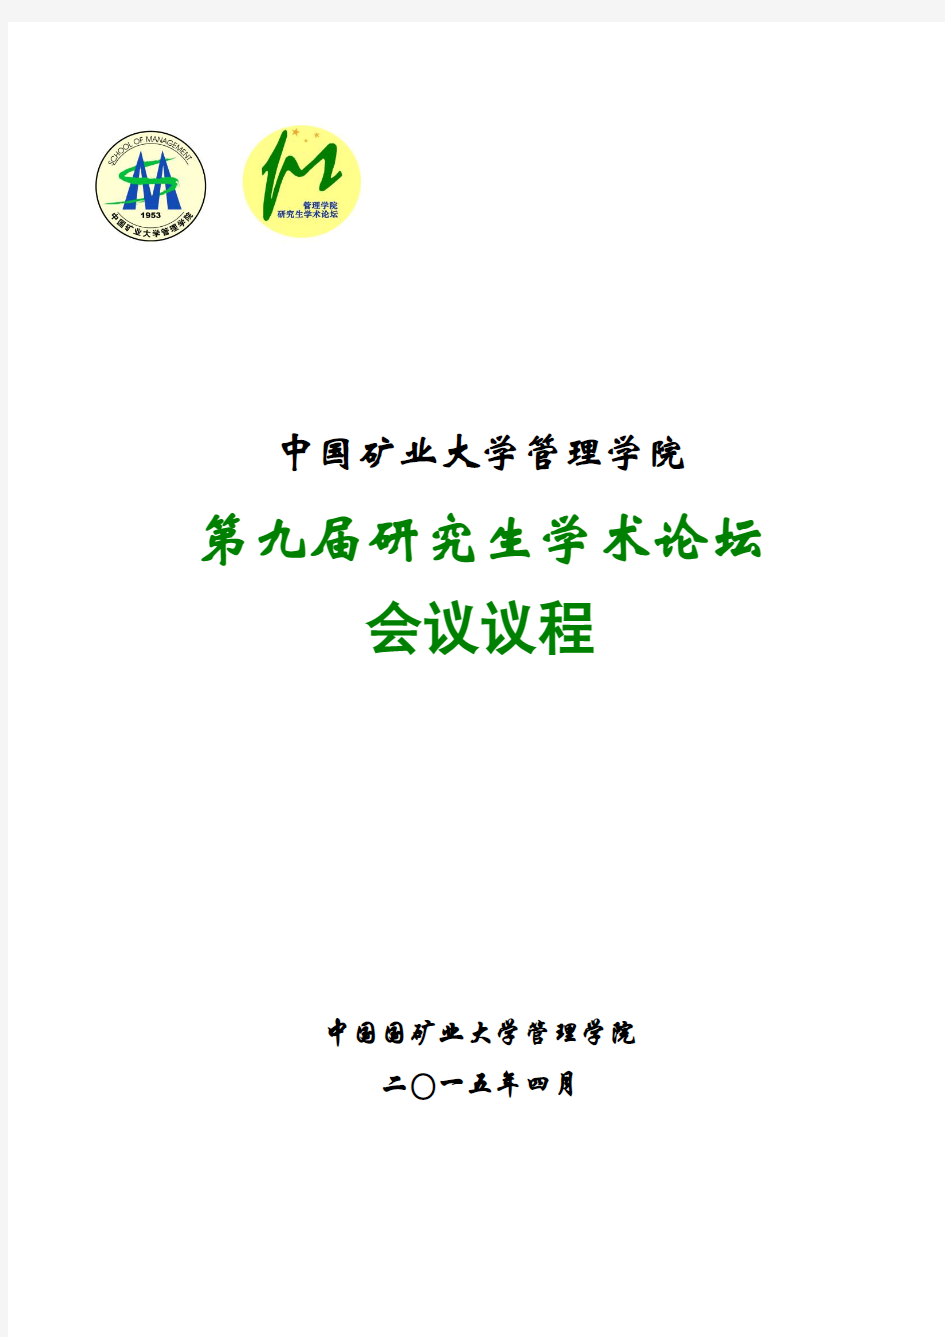 中国矿业大学管理学院第九届研究生学术论坛会议议程中国国矿业